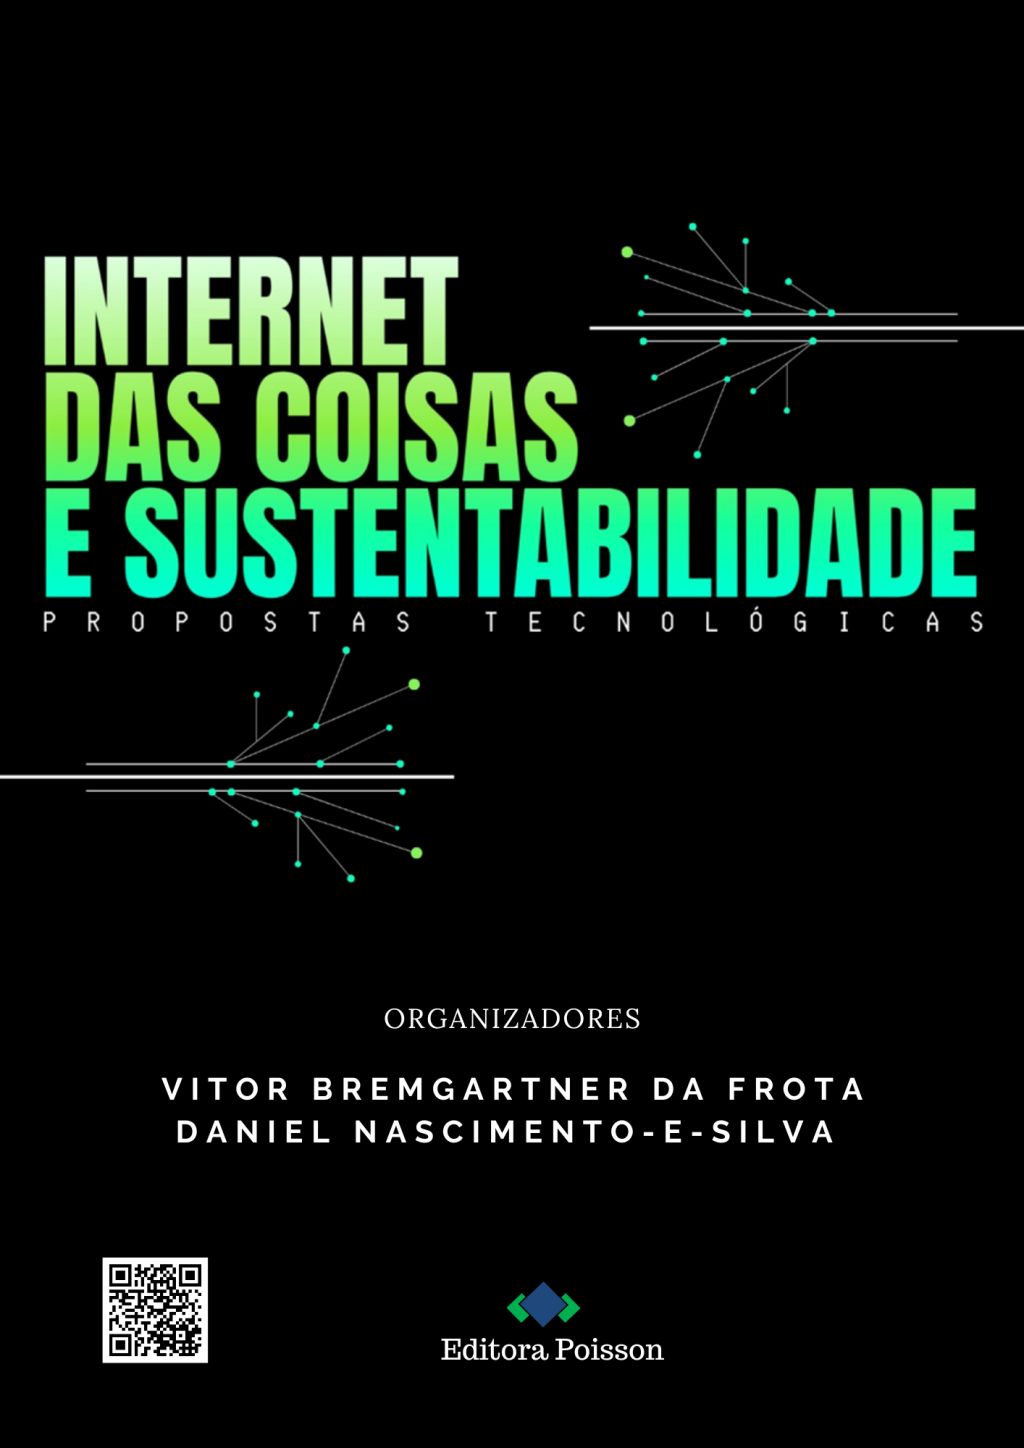 Internet das Coisas e Sustentabilidade: Propostas Tecnológicas